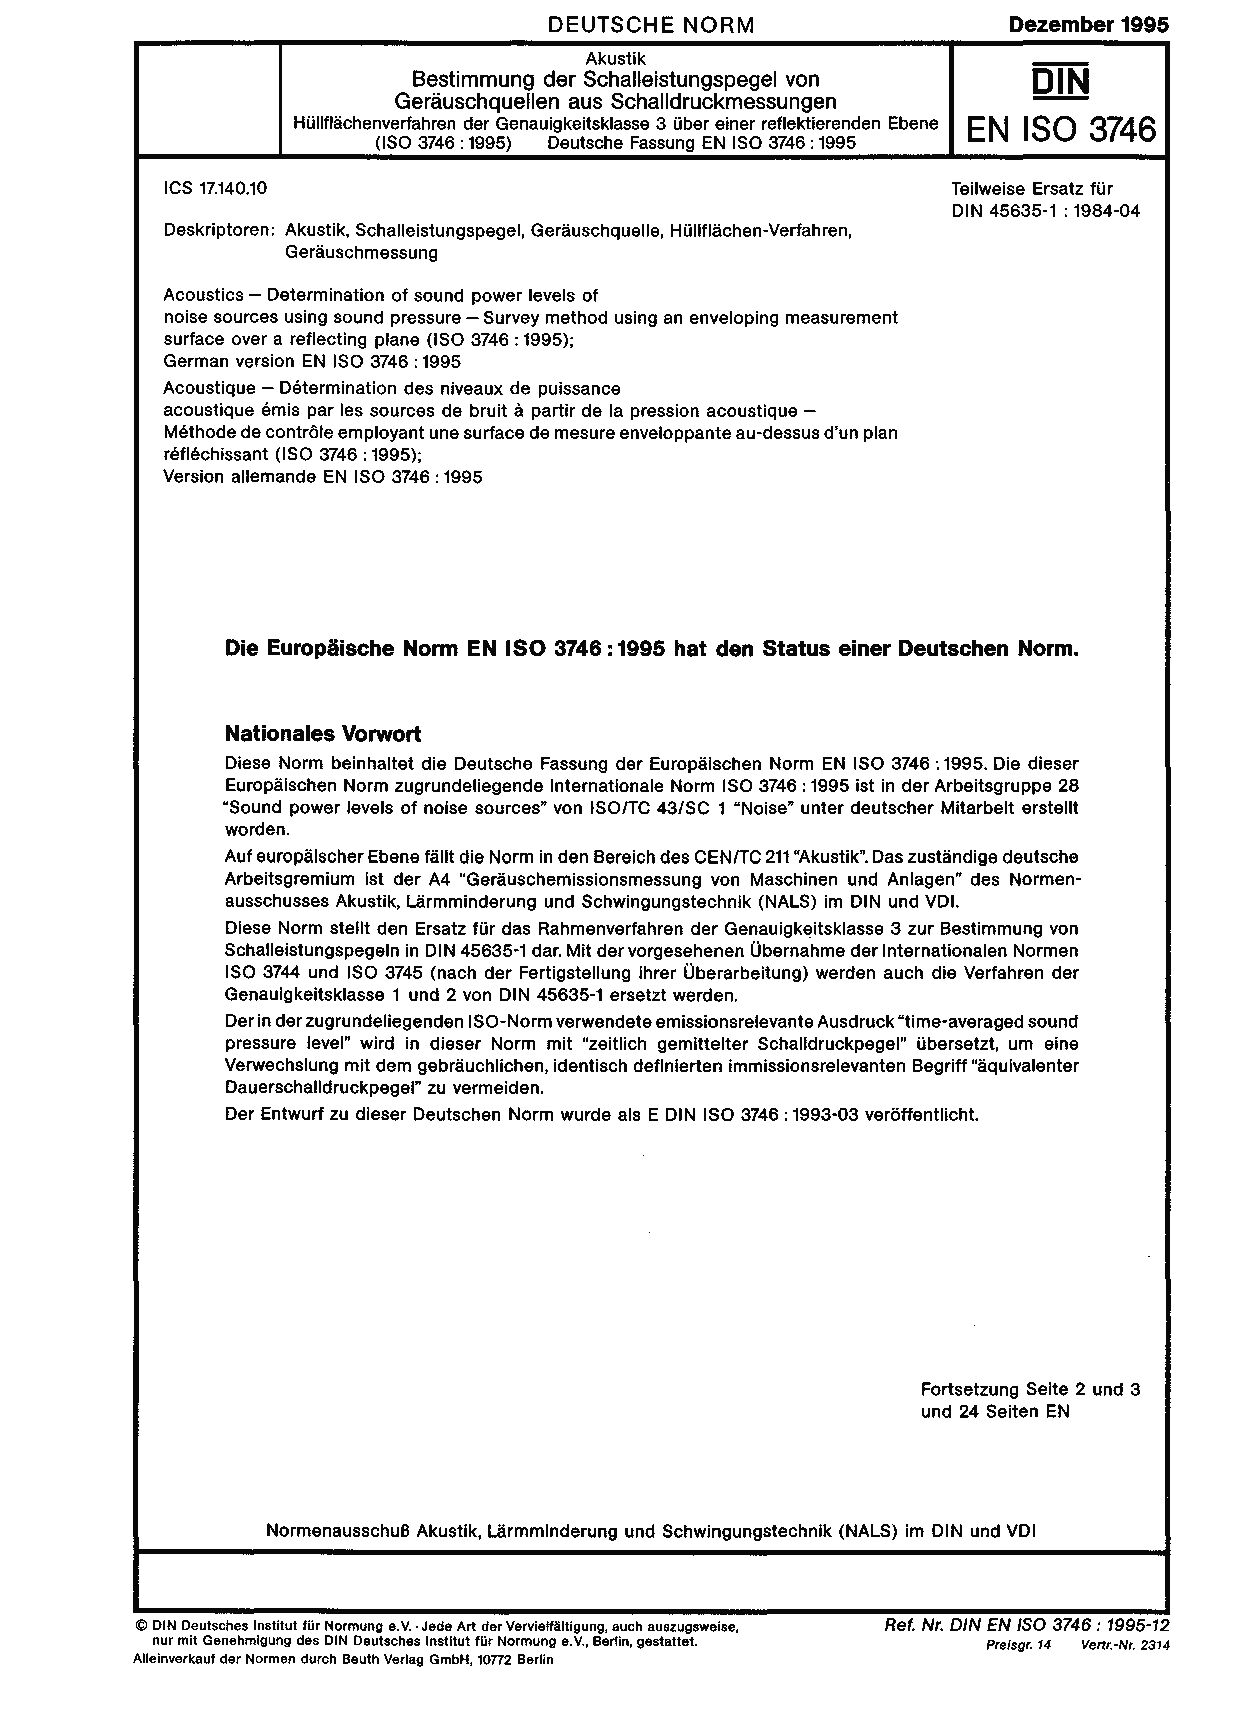 DIN EN ISO 3746:1995封面图